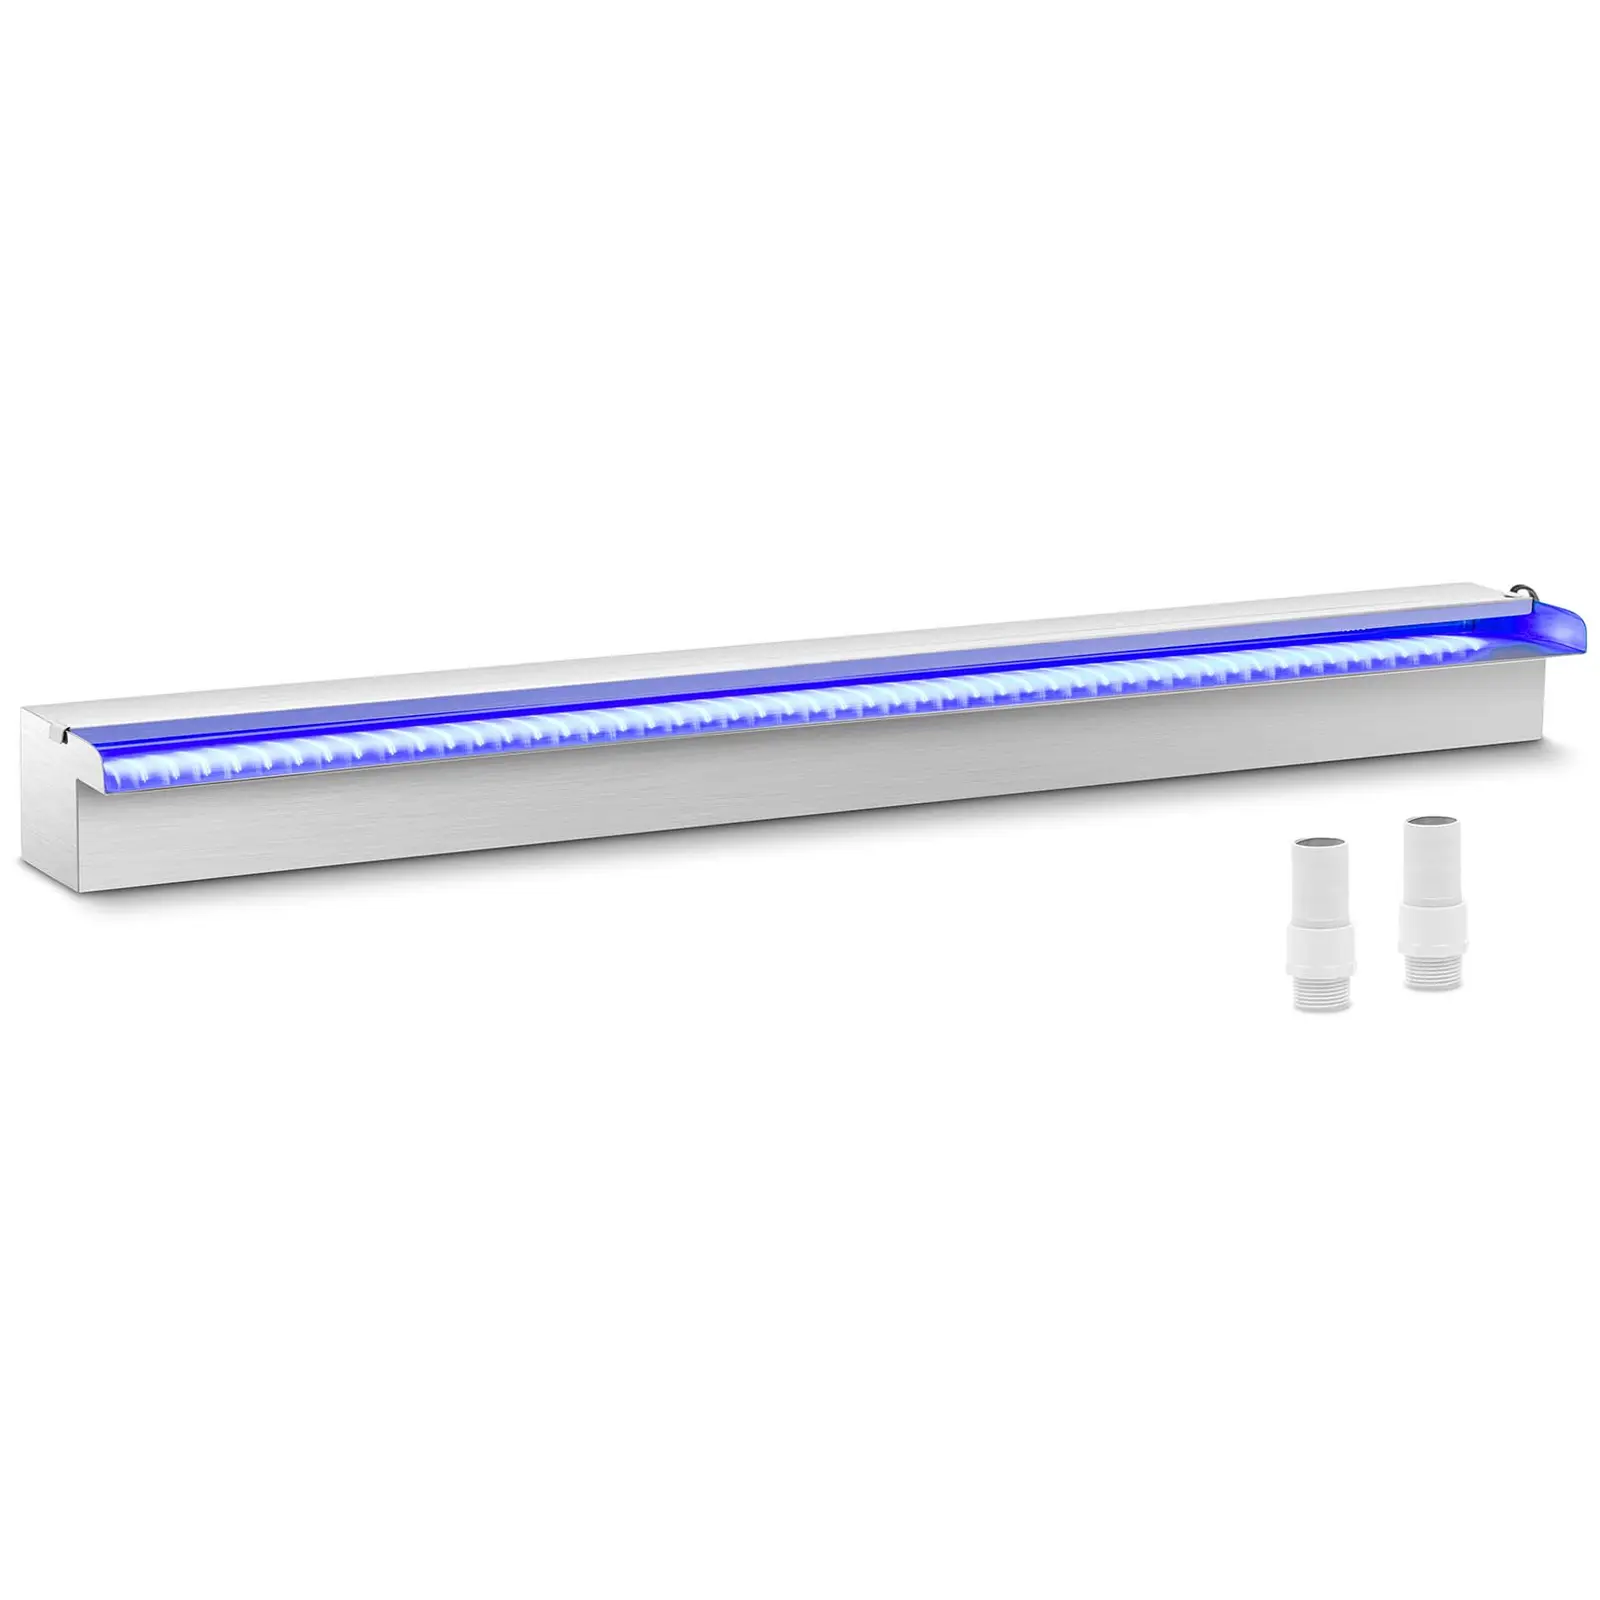 Schwalldusche - 90 cm - LED-Beleuchtung - Blau / Weiß - offener Wasserauslauf